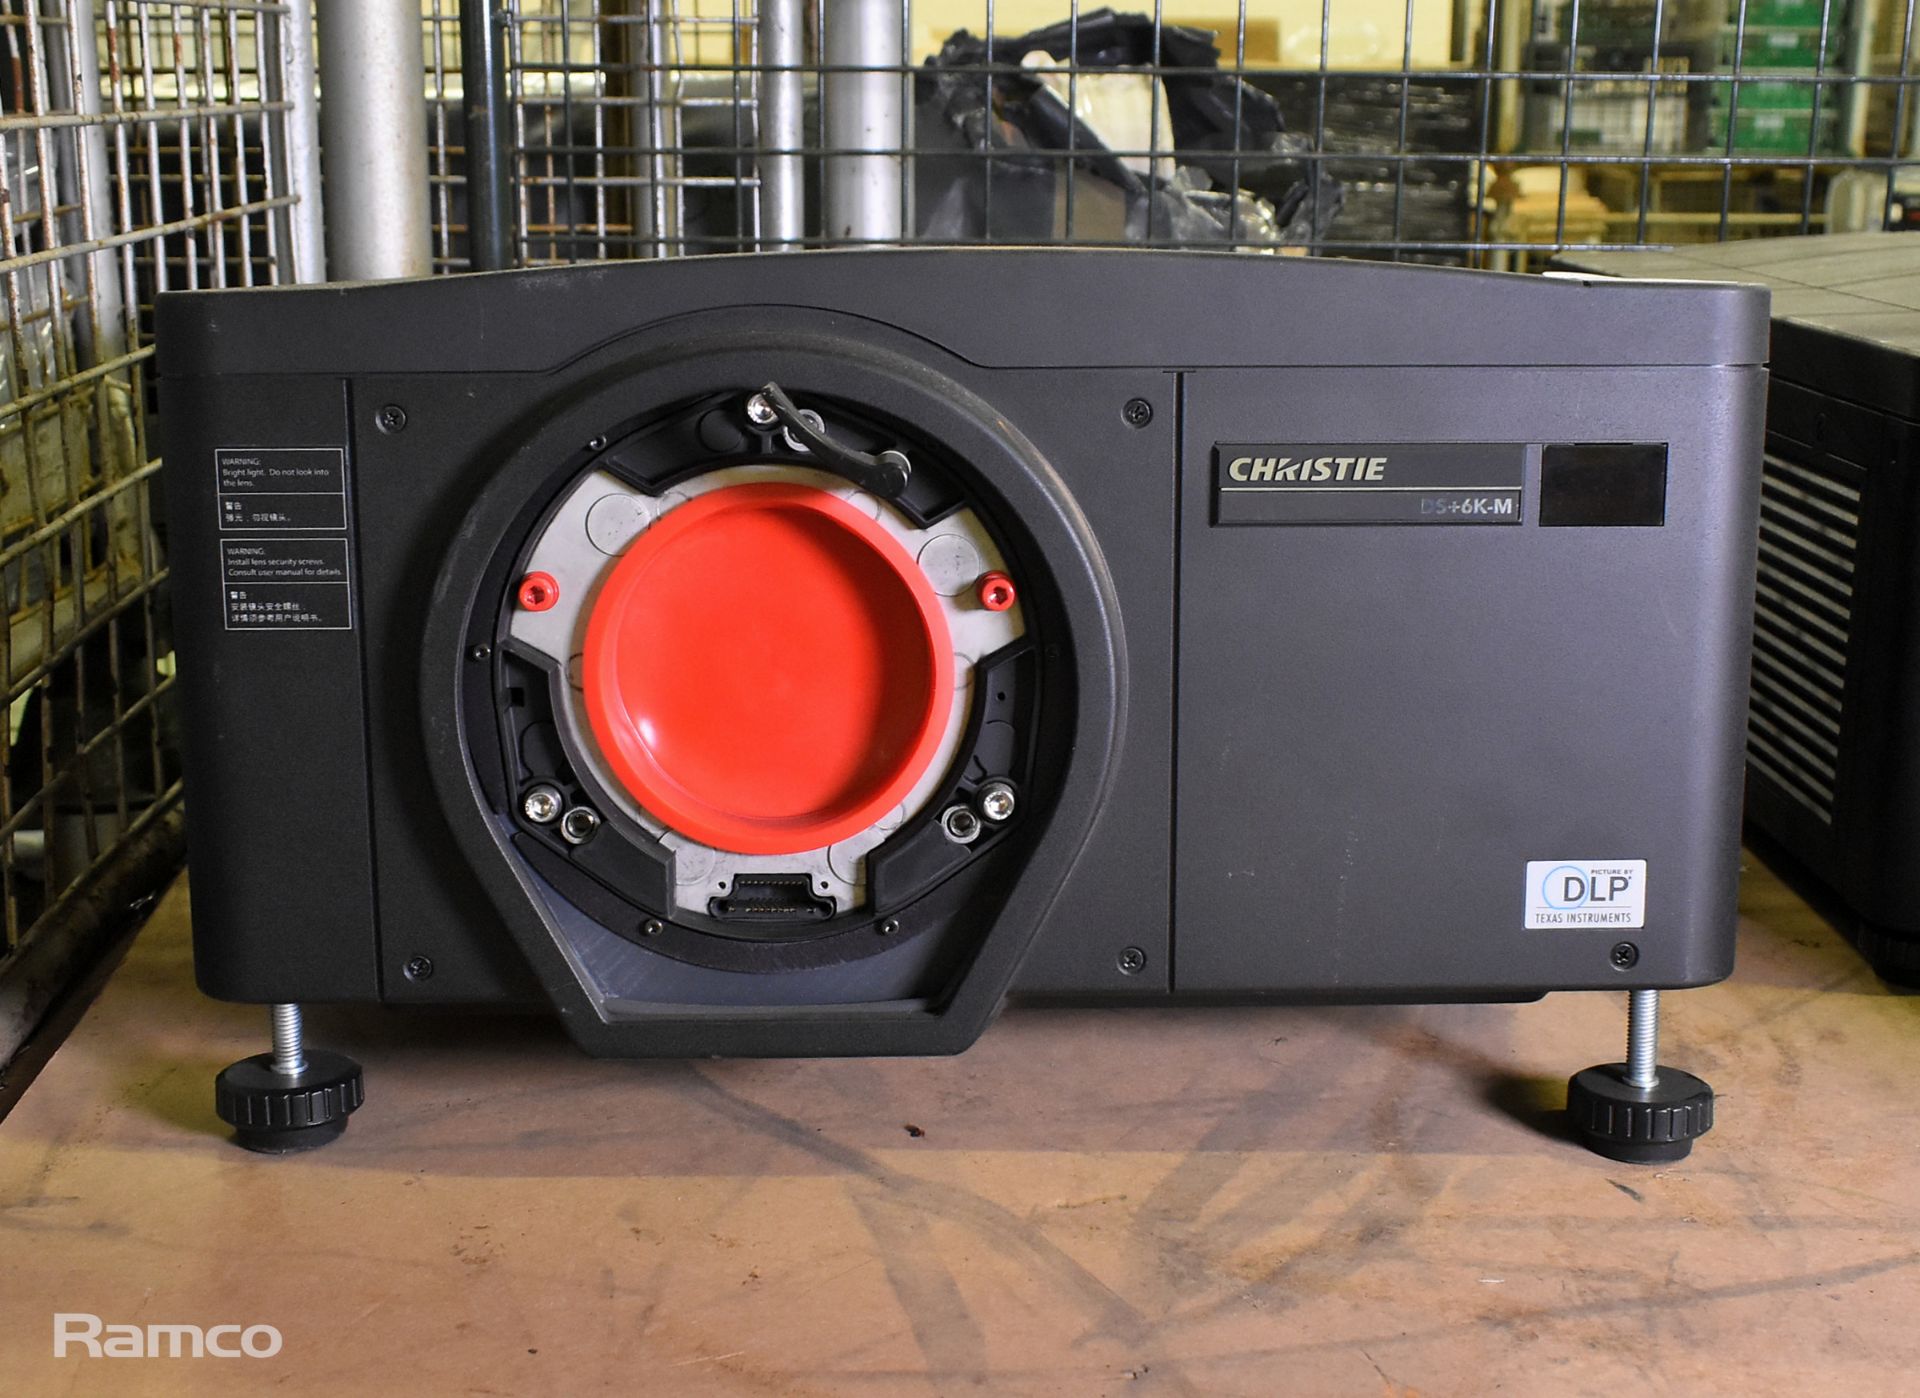 Christie DS+6K-M SXGA+ large venue projector - 100/240V 50/60Hz - L 600 x W 500 x H 260mm - Image 5 of 12